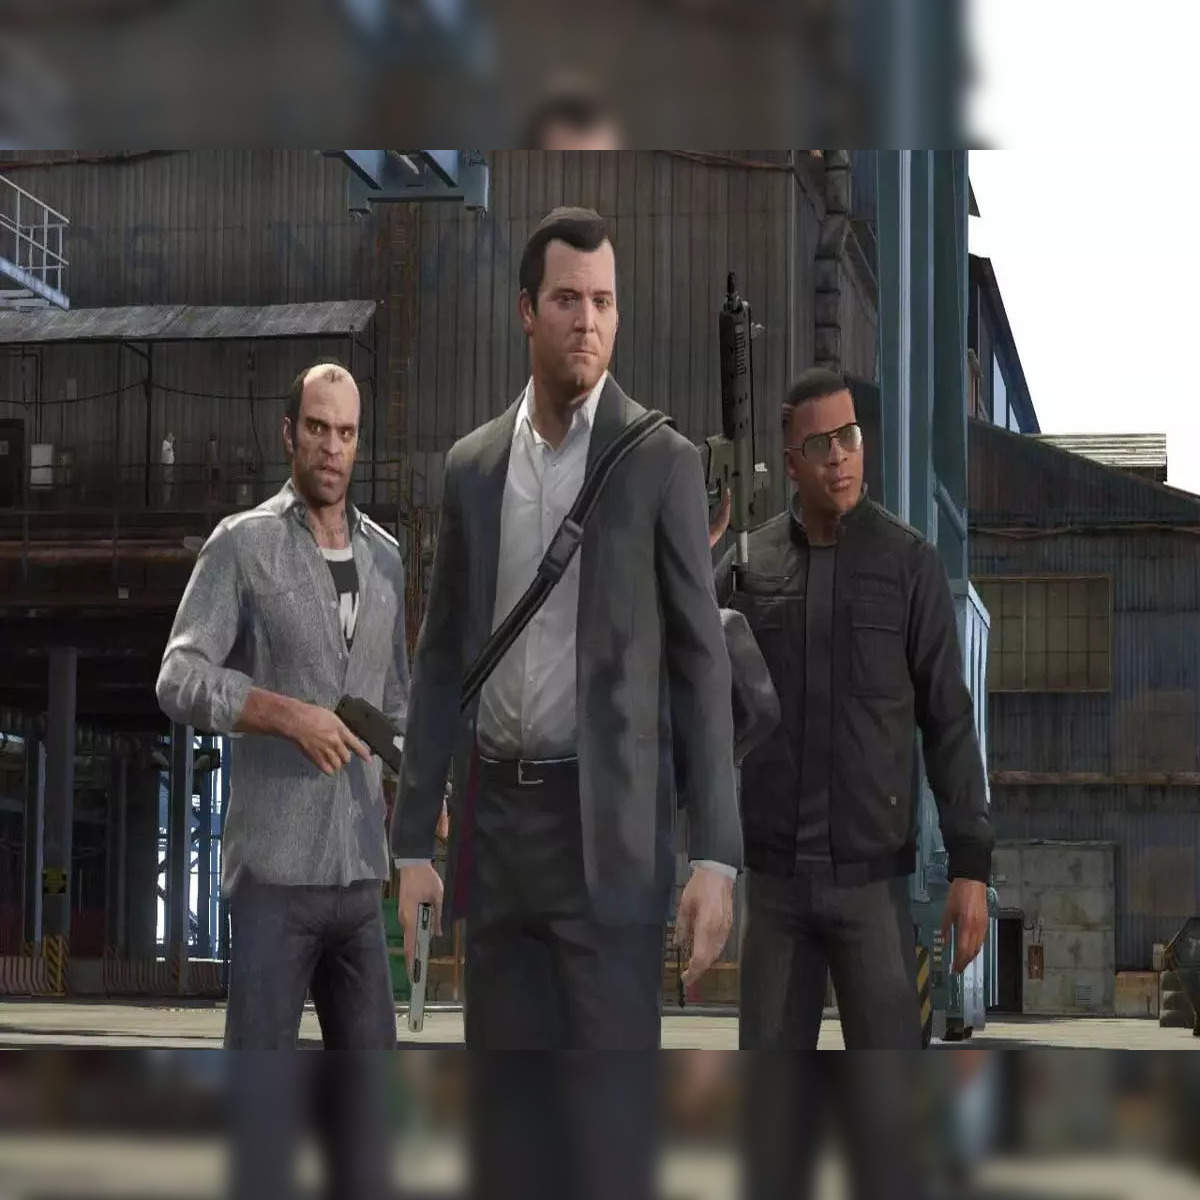 GTA Online Los Santos Drug Wars update download size for PC revealed